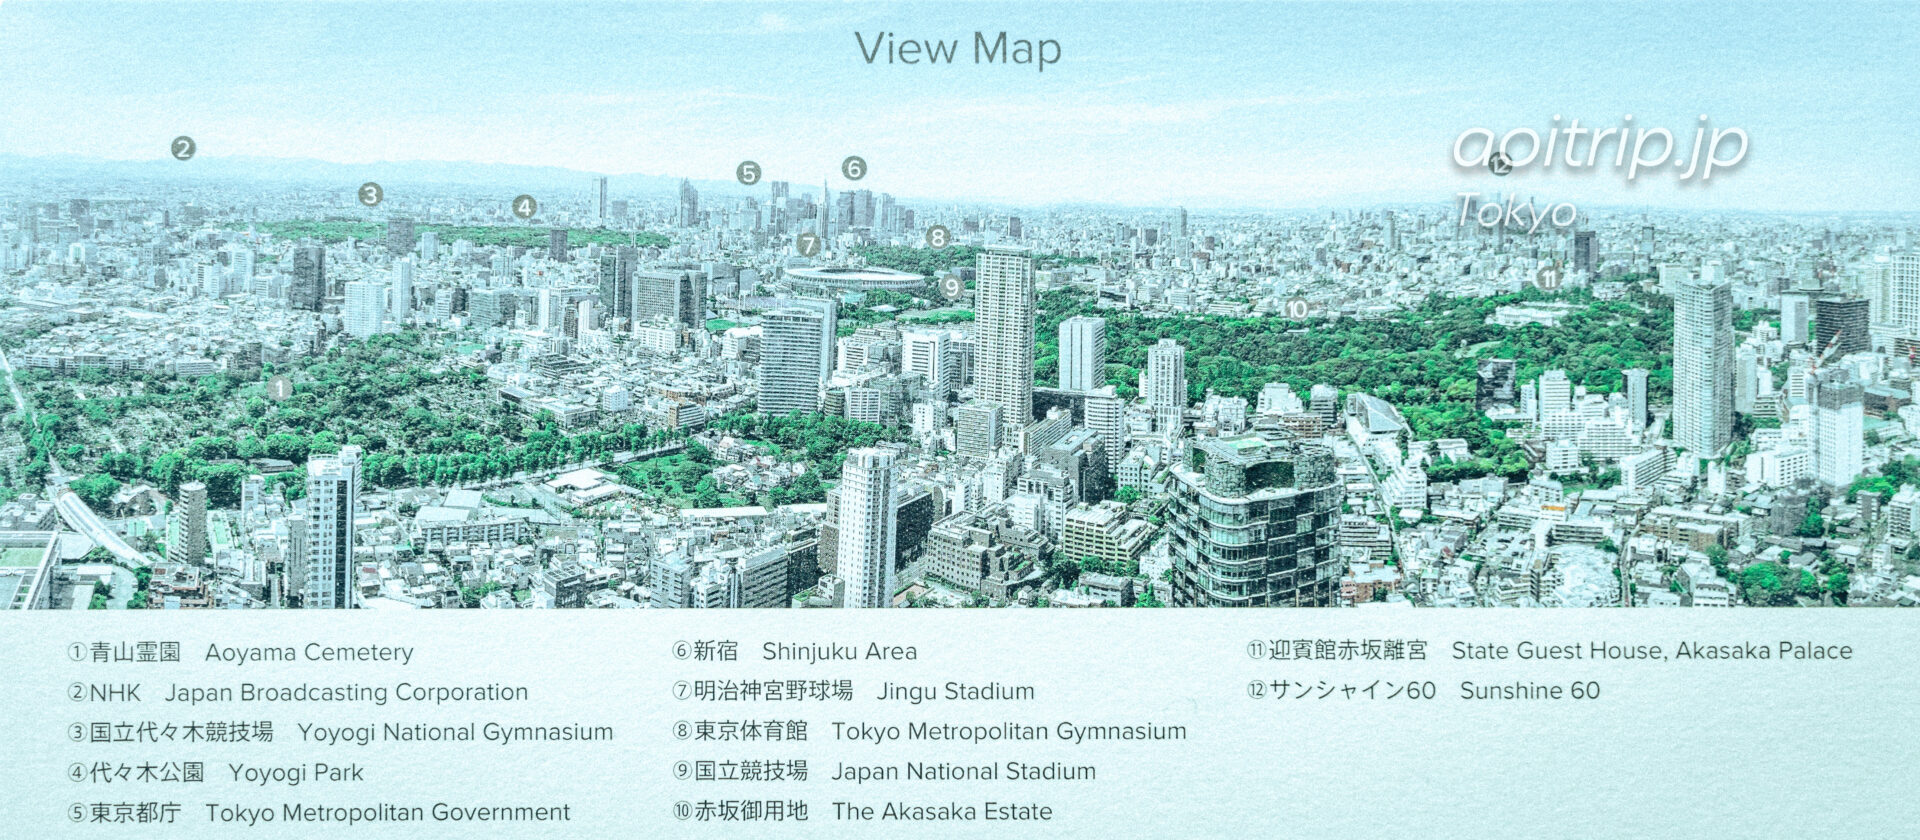 ザ リッツカールトン東京からの眺望 View Map